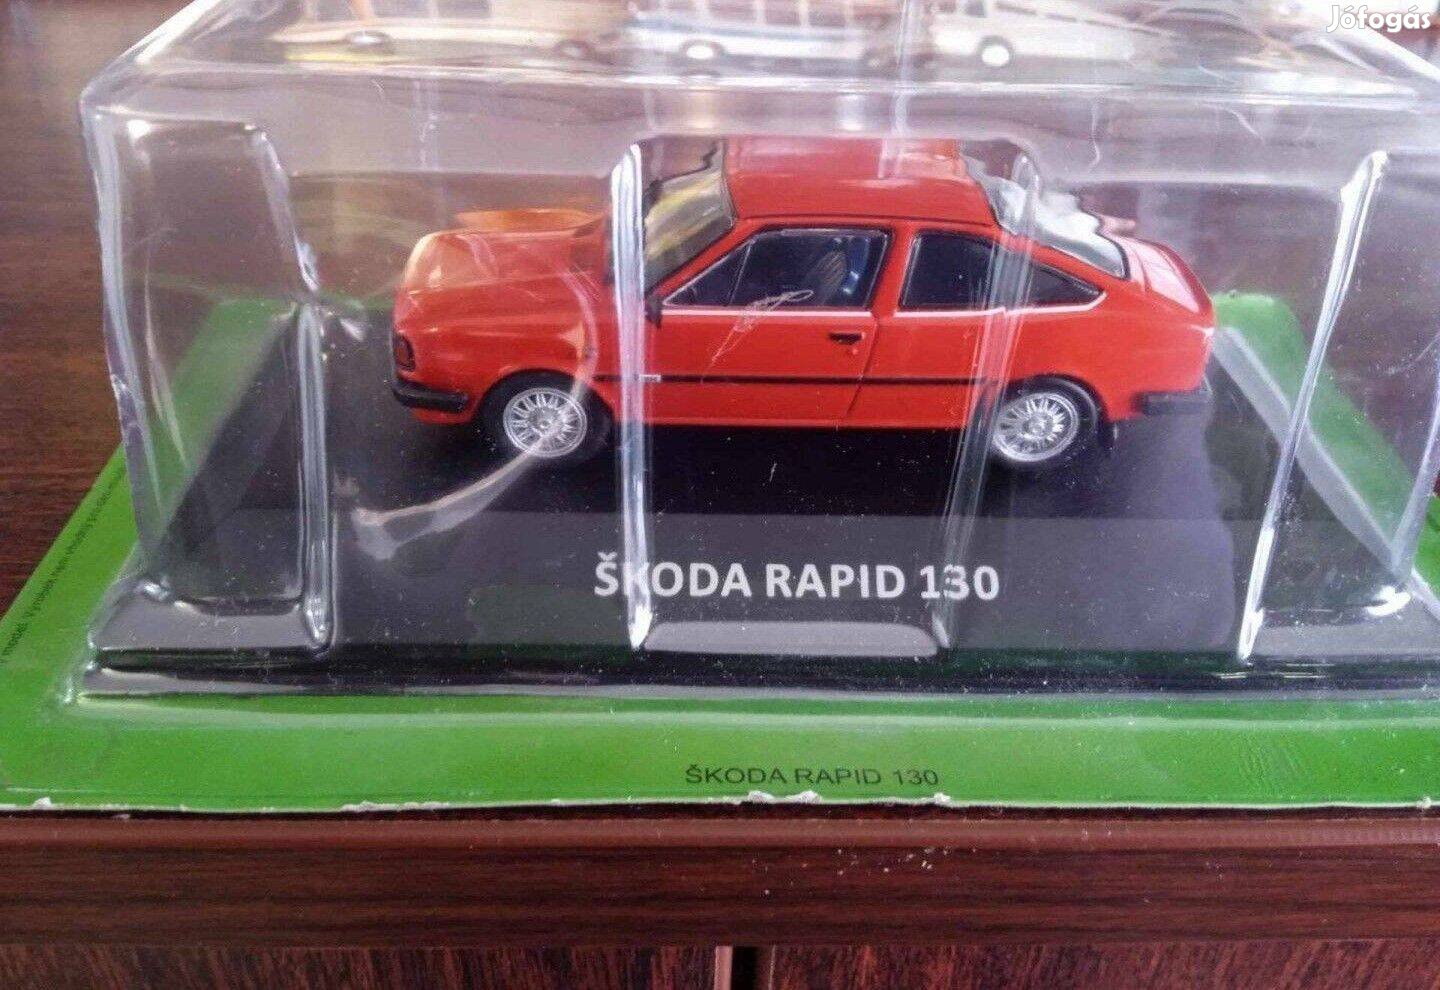 Skoda Rapid 130 kisauto modell 1/43 Eladó